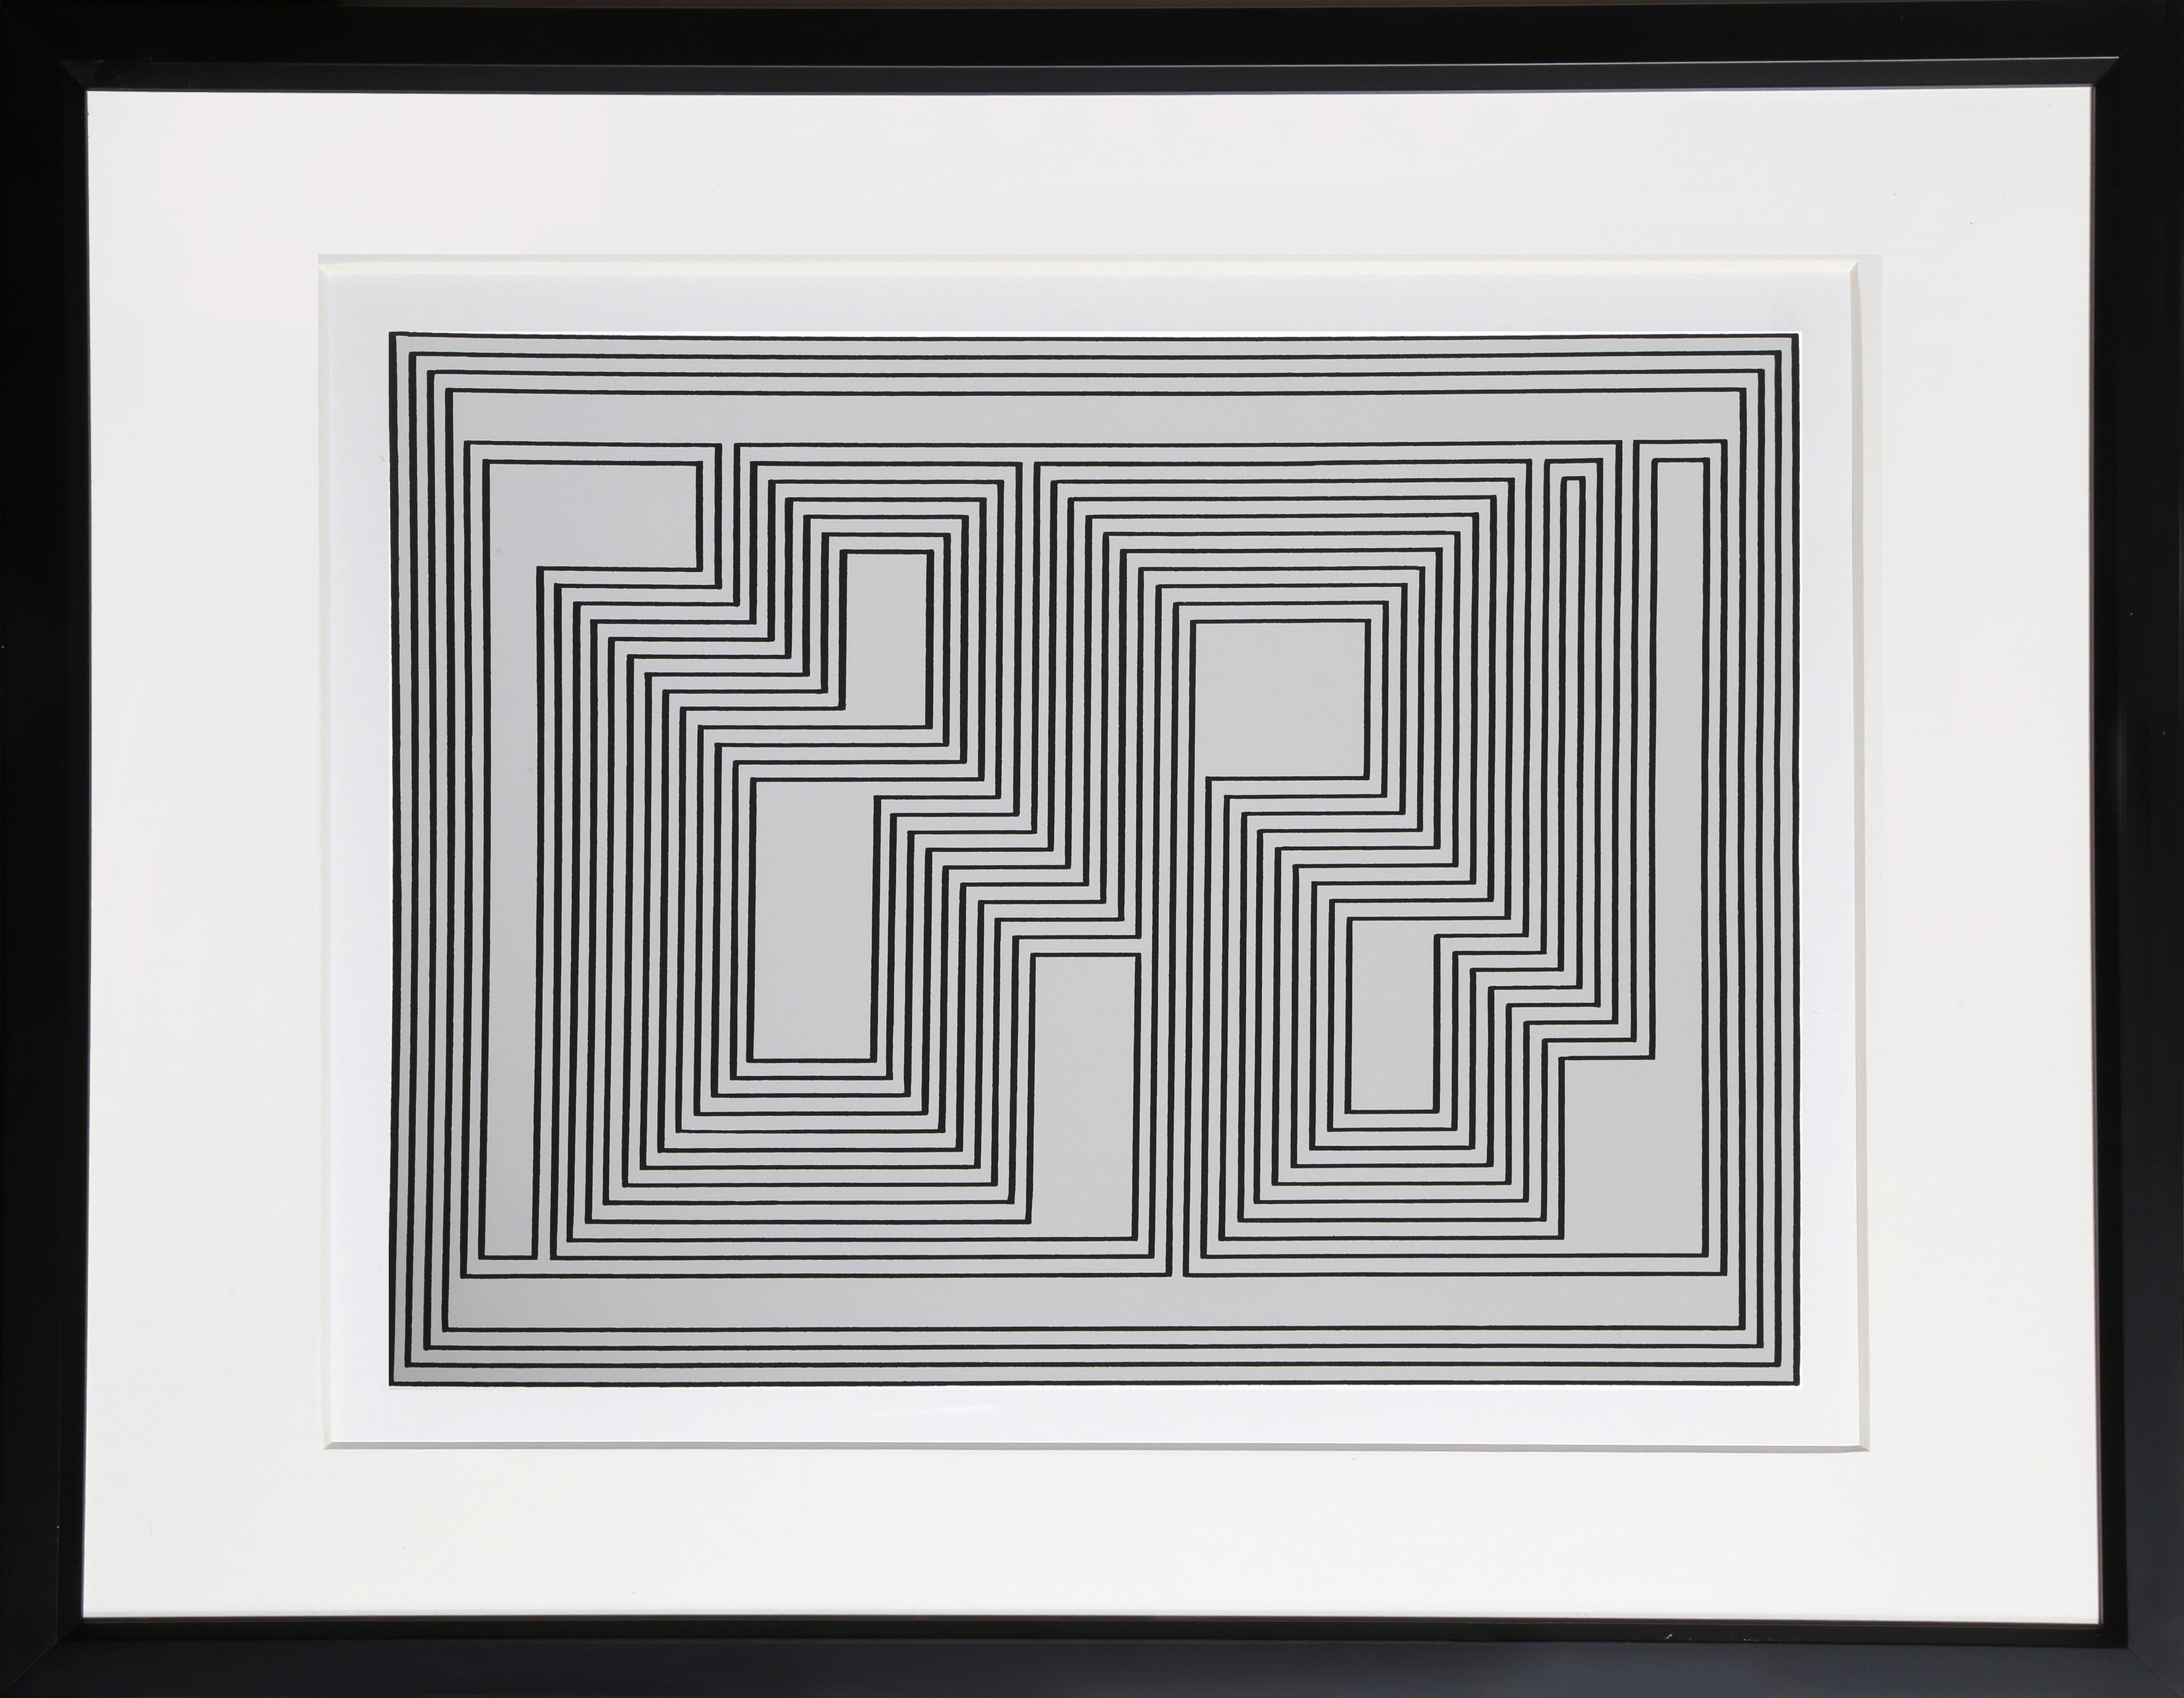 Aus der Mappe "Formulierung: Articulation" von Josef Albers aus dem Jahr 1972. Diese monumentale Serie besteht aus 127 Originalserigrafien, die einen endgültigen Überblick über die wichtigsten Farb- und Formtheorien des Künstlers geben.  Eine Kopie